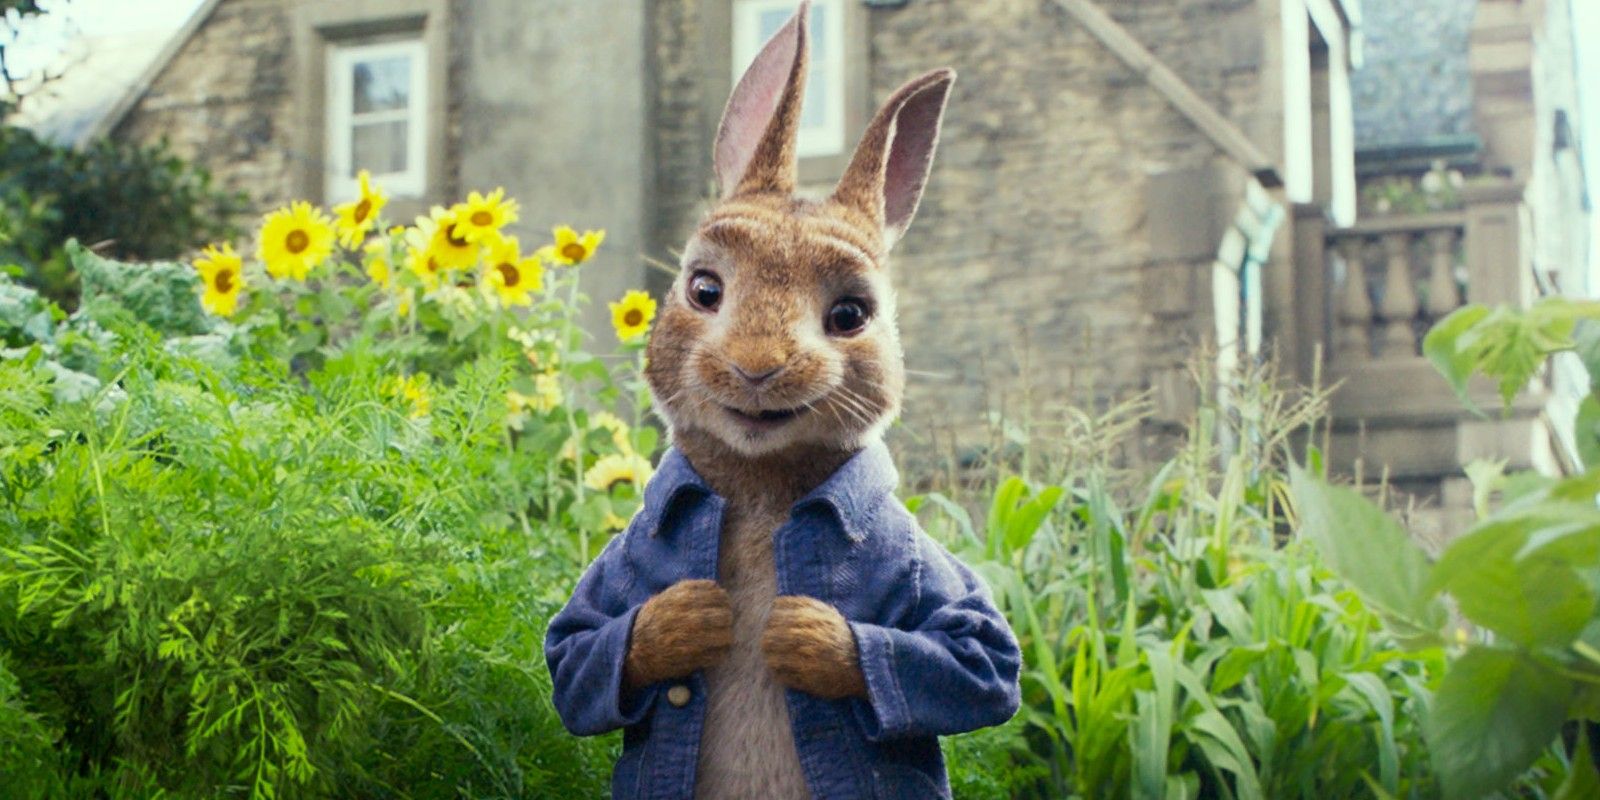 Peter Rabbit in the Garden in Peter Rabbit (2018)